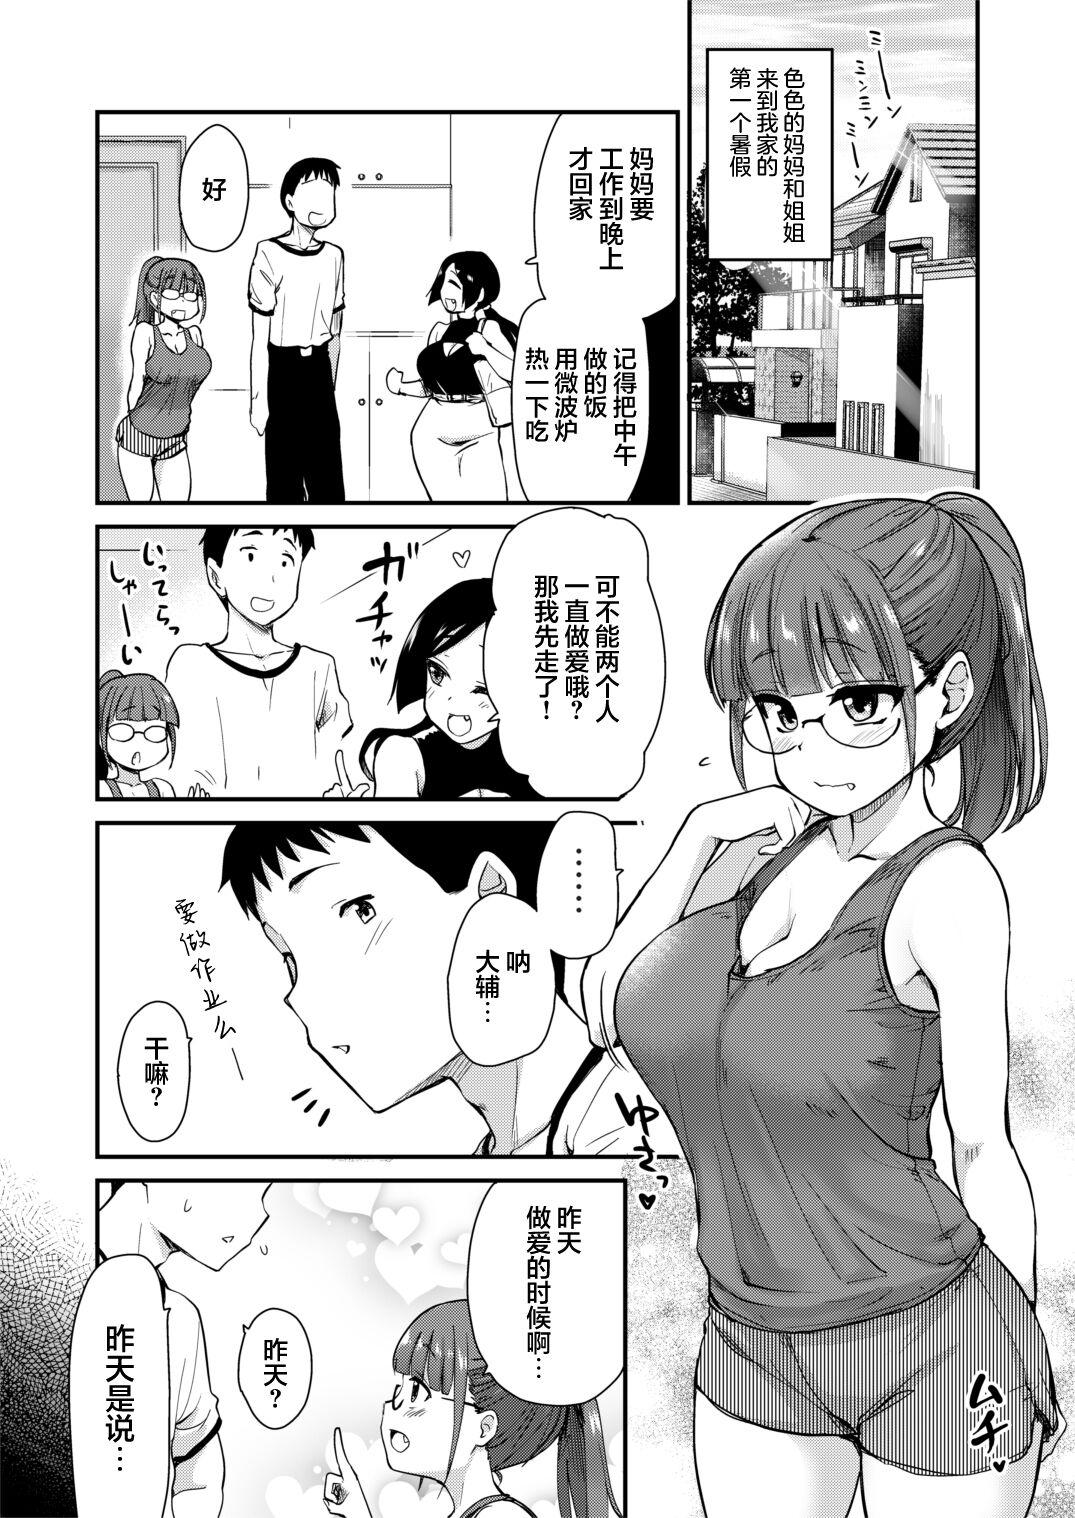 Massage Sex Ane no Seiyoku Shori wa Ototo ga Suru Monoda to, Gitei wa Omoi Hajimete Iru. - Original Shesafreak - Page 2